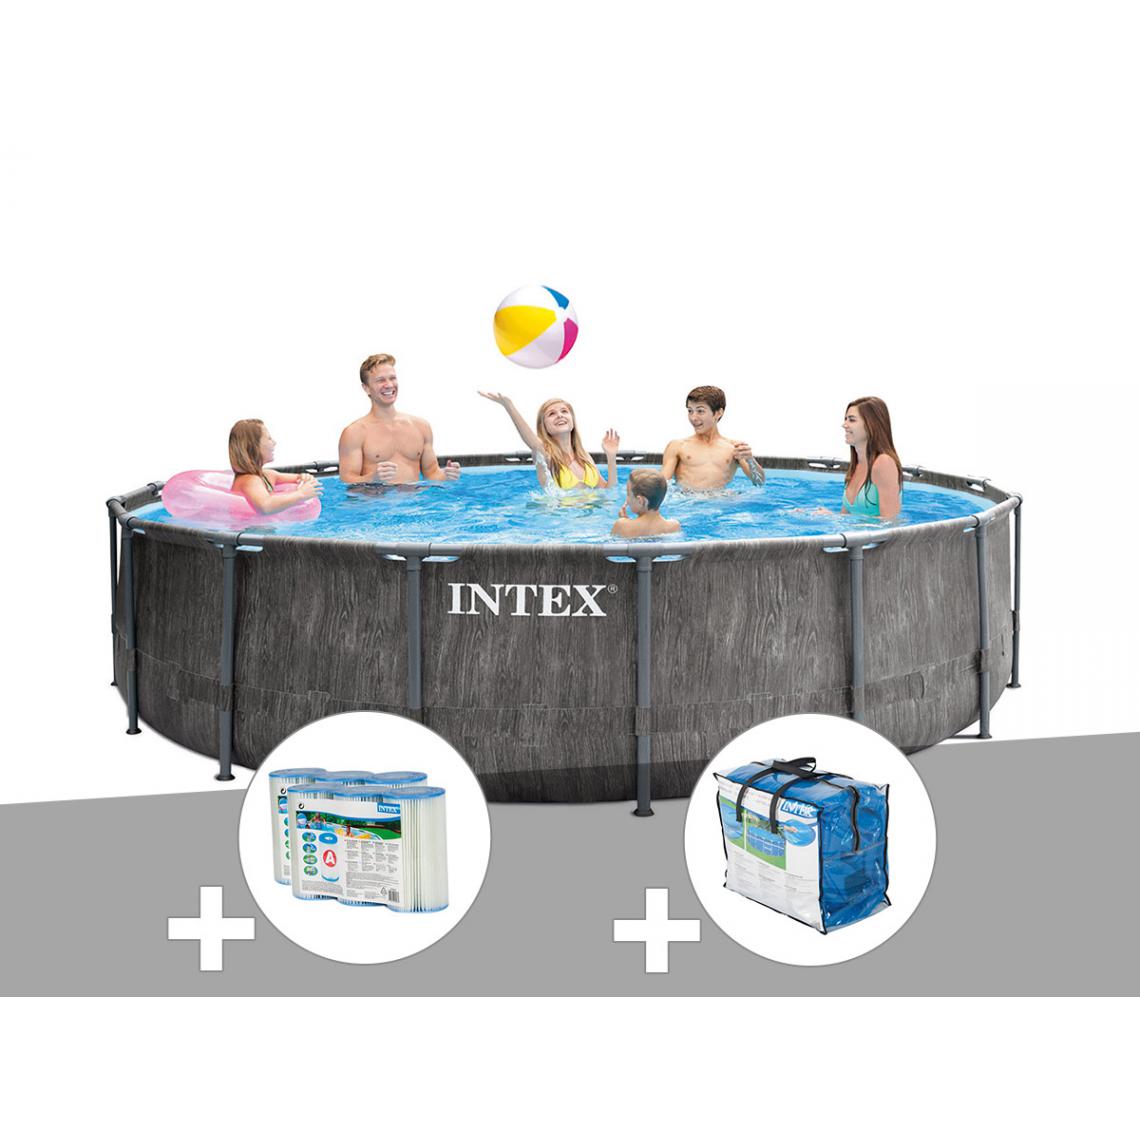 Intex - Kit piscine tubulaire Intex Baltik ronde 5,49 x 1,22 m + 6 cartouches de filtration + Bâche à bulles - Piscine Tubulaire